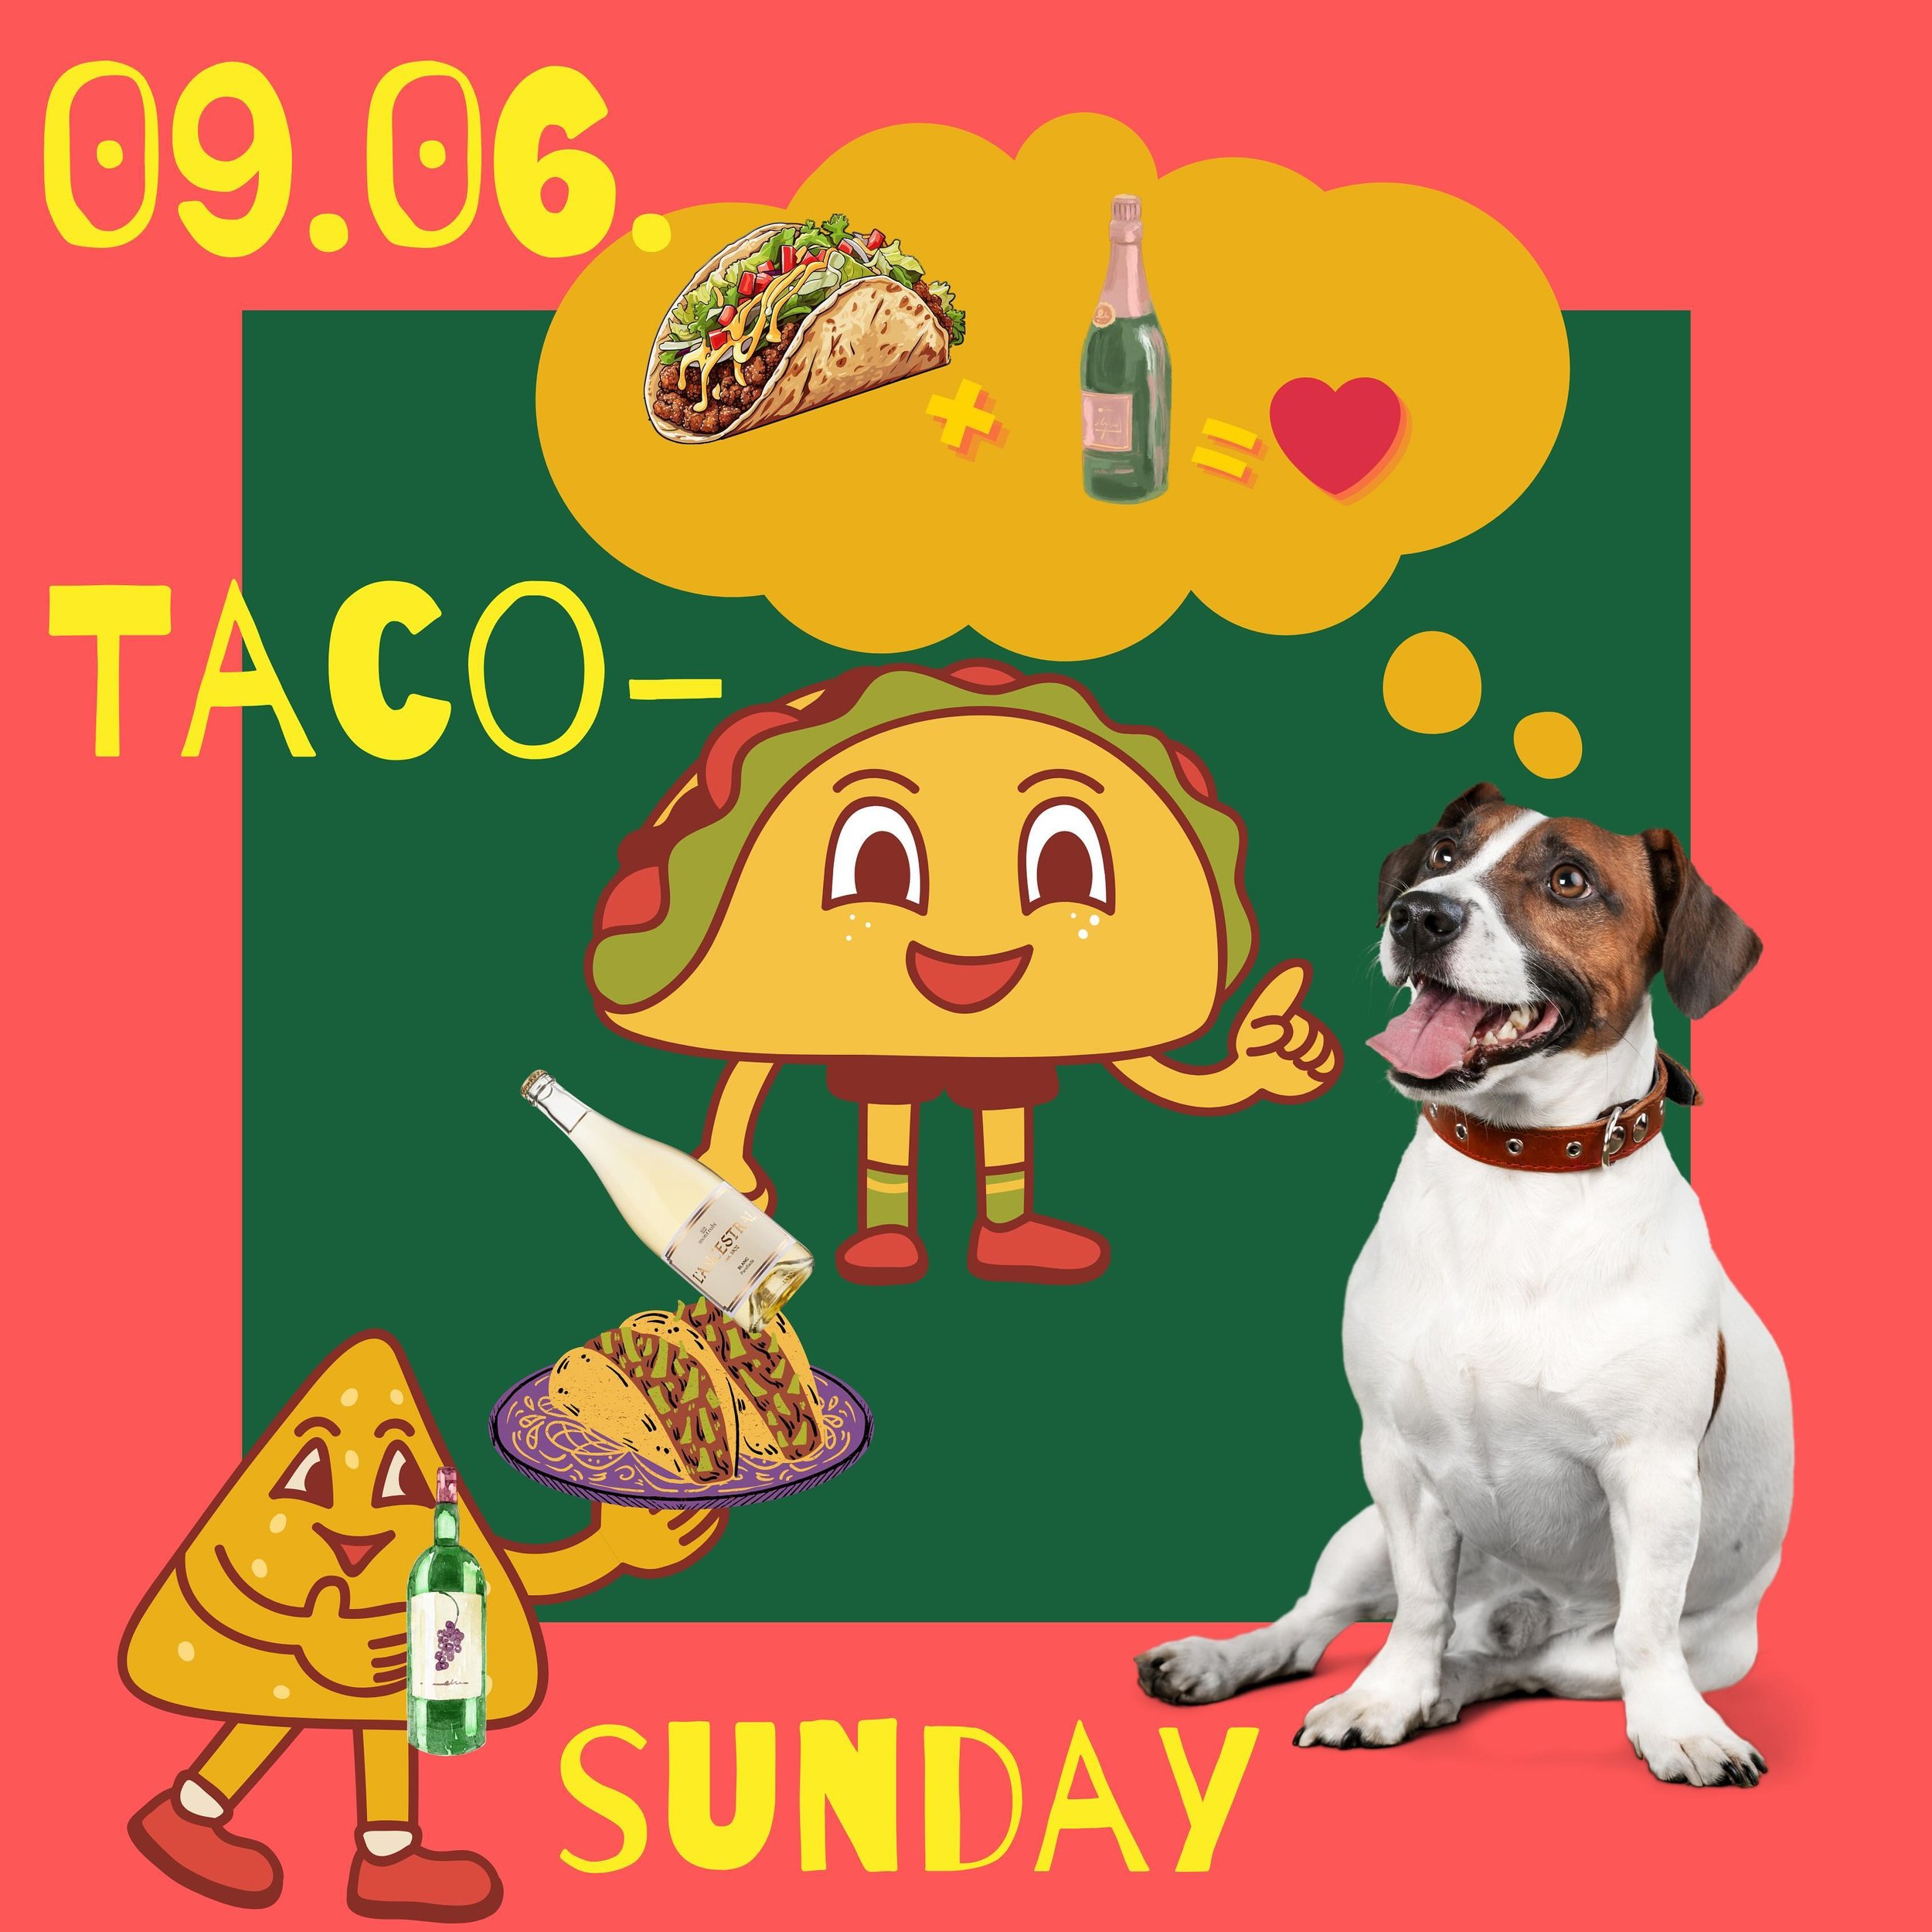 Ein wunderbaren kleinen Freitag w&uuml;nschen wir euch! 

🌮🌮🌮🌮🌮🌮🌮🌮🌮🌮🌮🌮🌮🌮

Es gibt noch ein kleines Event f&uuml;r euch! 

Am 09.06.24 hat Philip Geburtstag, also machen wir einen Taco Sunday mit Orangewine, Ancestral PetNat &amp; kalifo